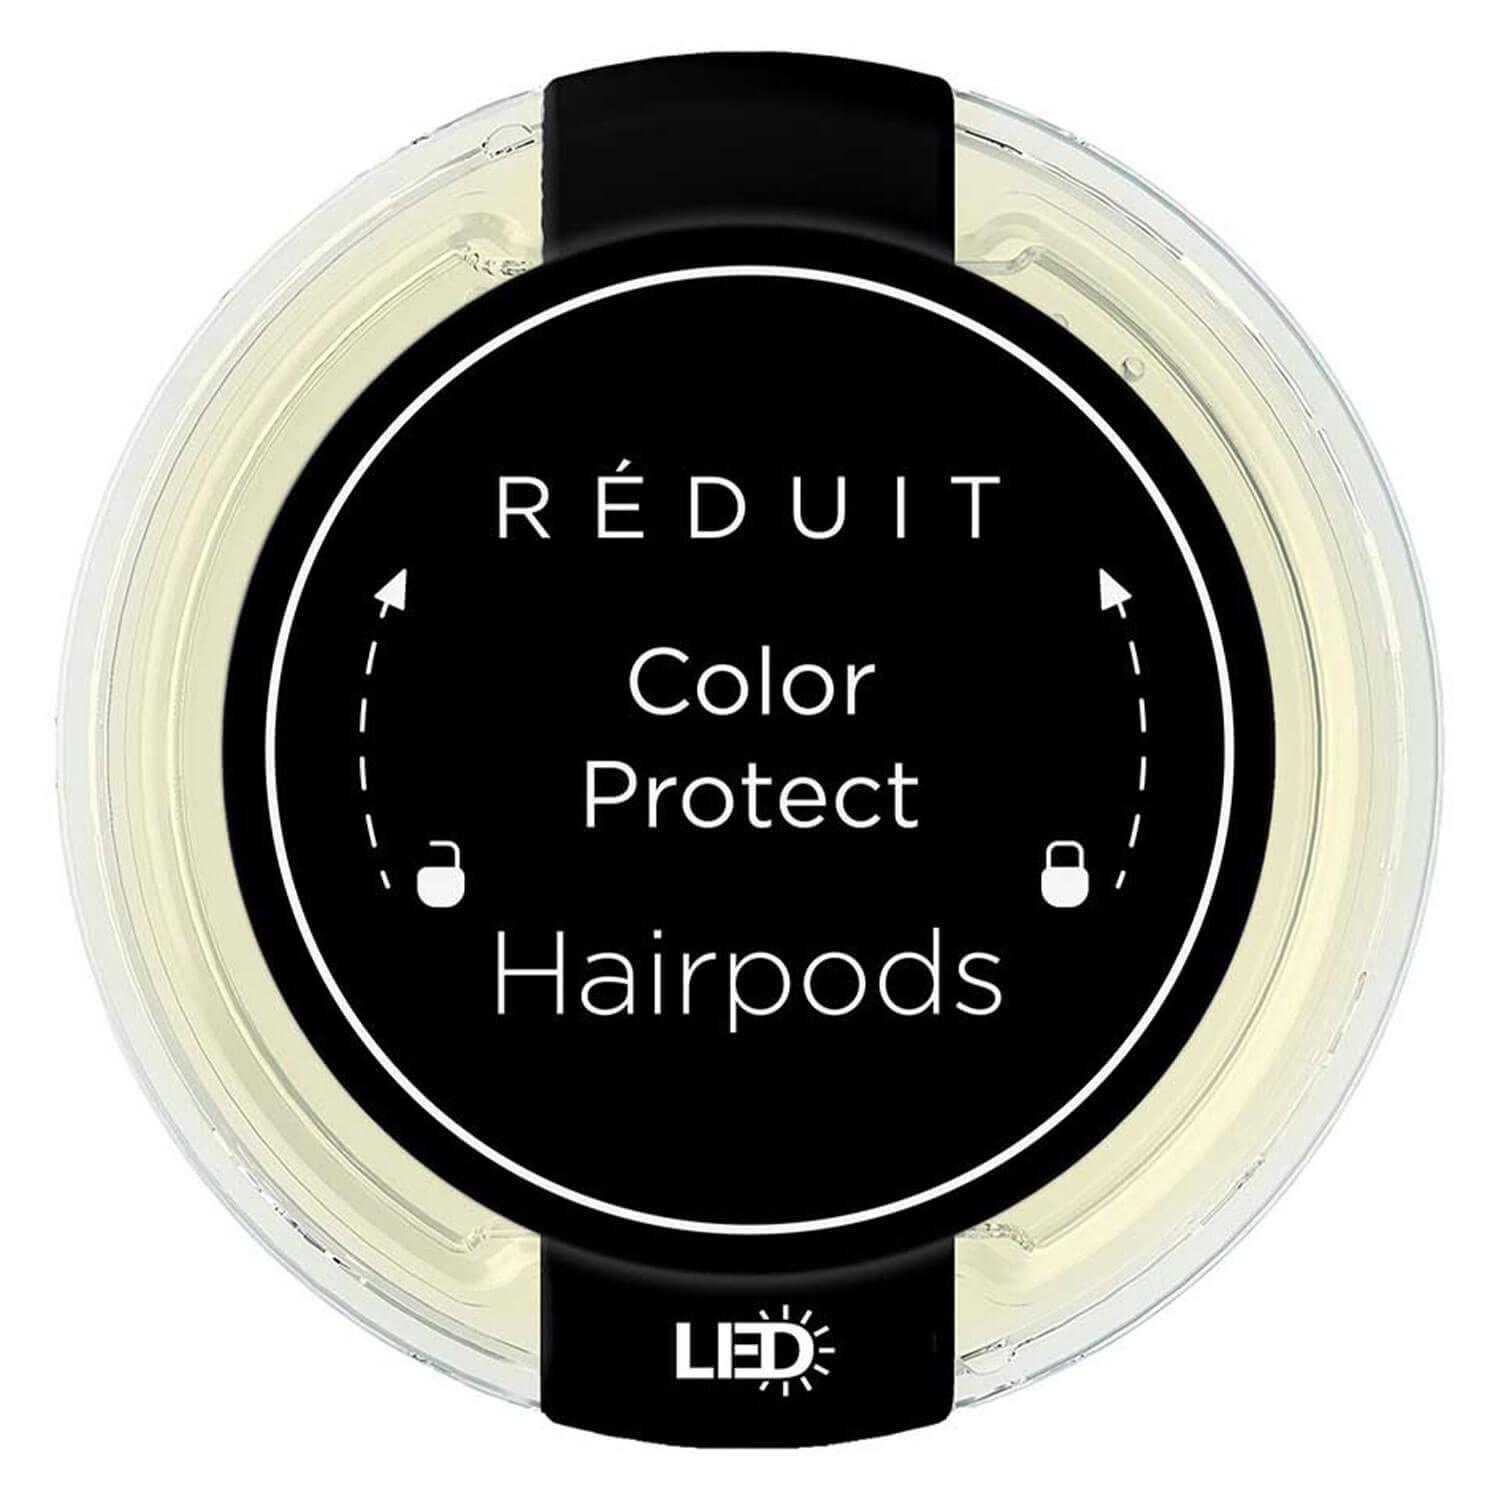 RÉDUIT - Color Protect Hairpods LED